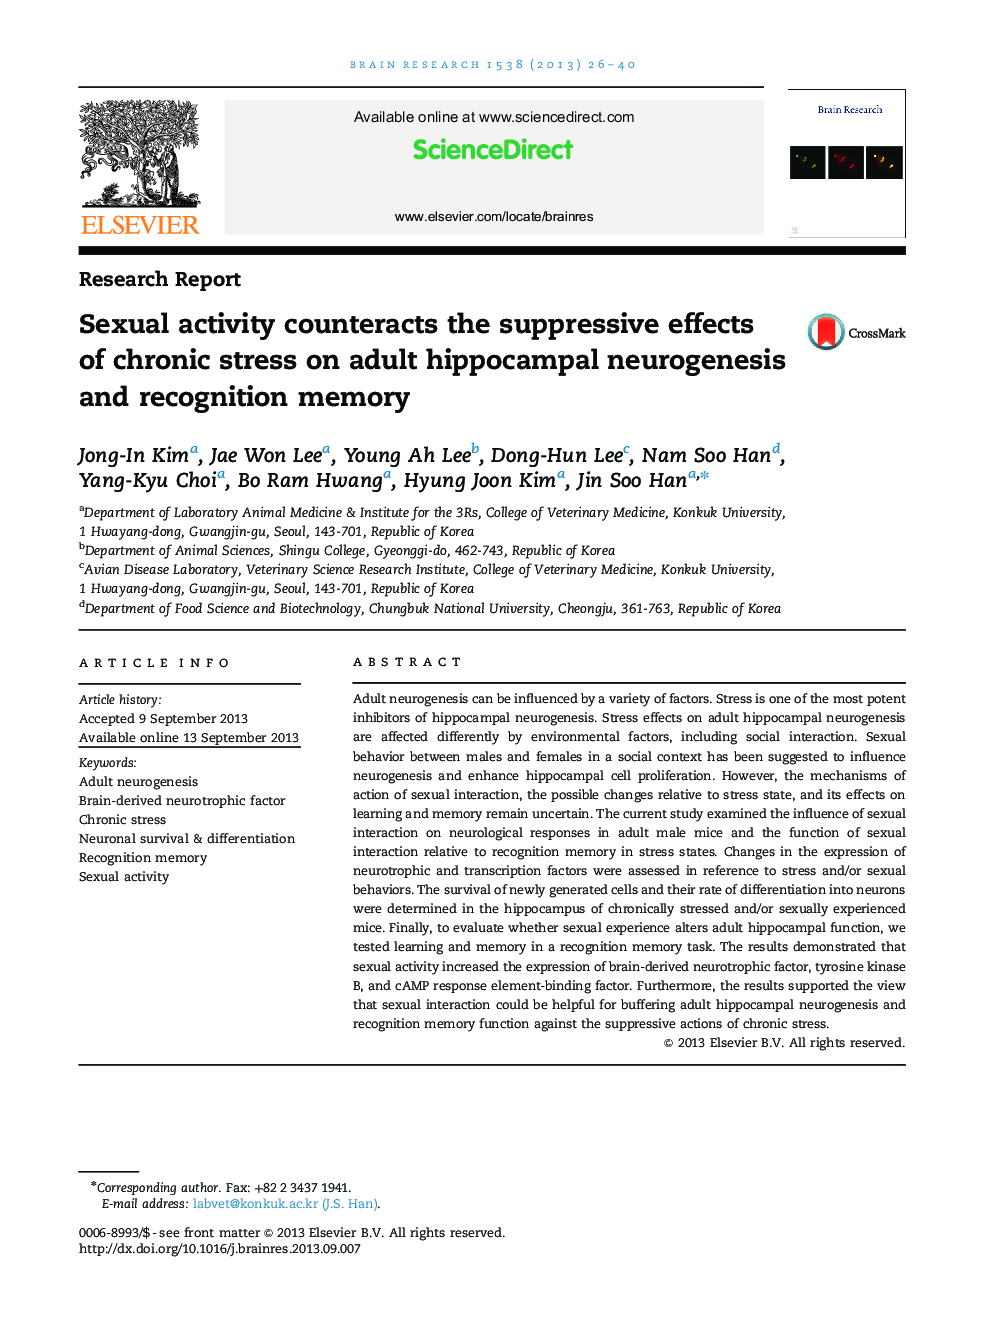 فعالیت تحقیق و تفحص در فعالیت های غیرمعمول اثرات سرکوب کننده استرس مزمن را برروی نوروژنز هیپوکامپ بزرگسال و حافظه شناختی 